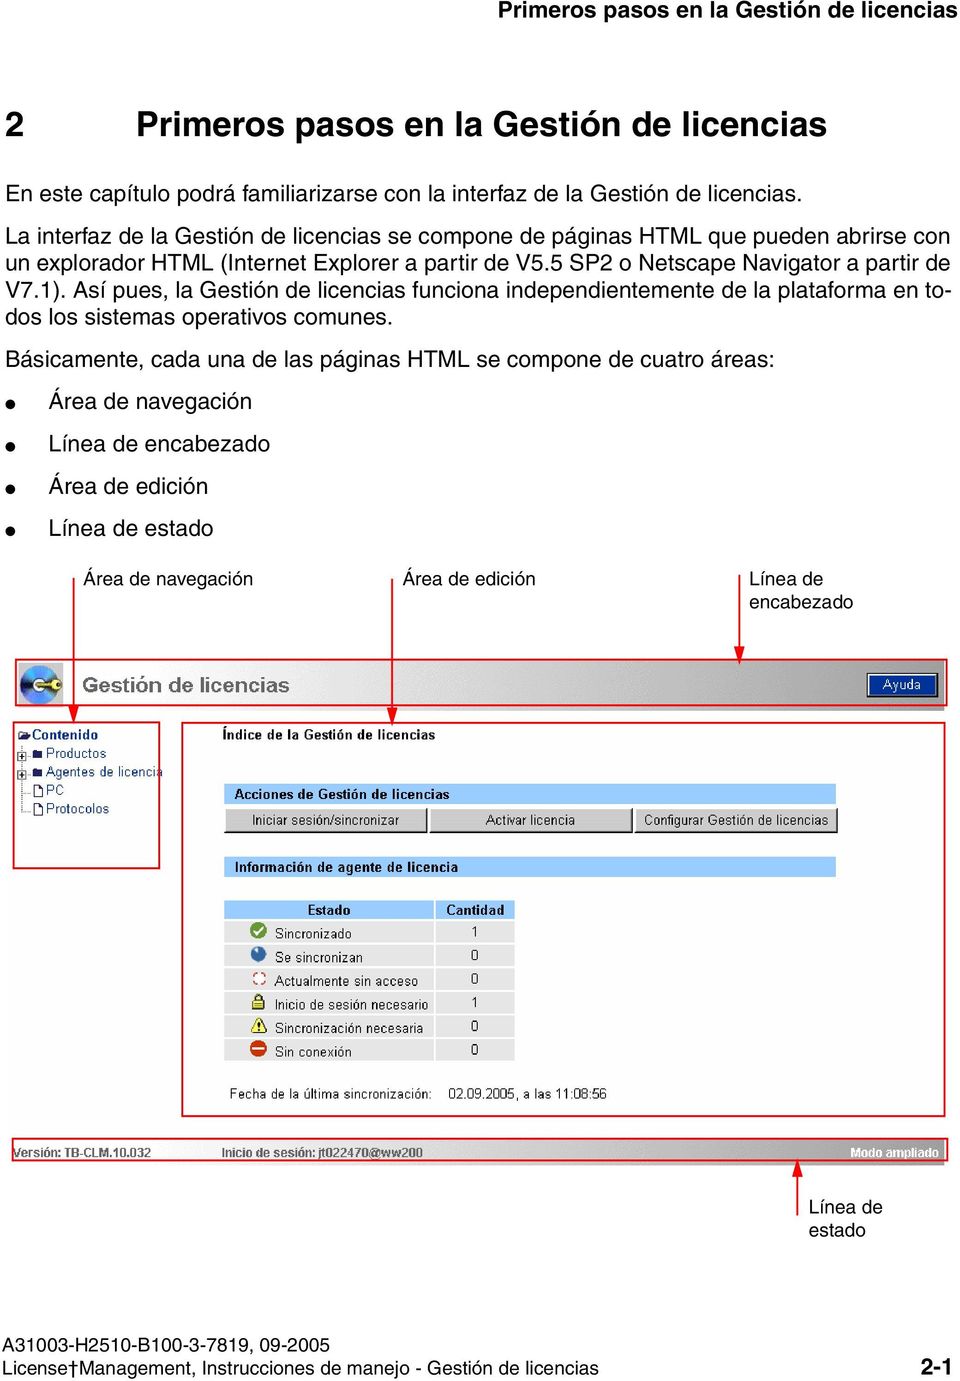 La interfaz de la Gestión de licencias se compone de páginas HTML que pueden abrirse con un explorador HTML (Internet Explorer a partir de V5.5 SP2 o Netscape Navigator a partir de V7.1).